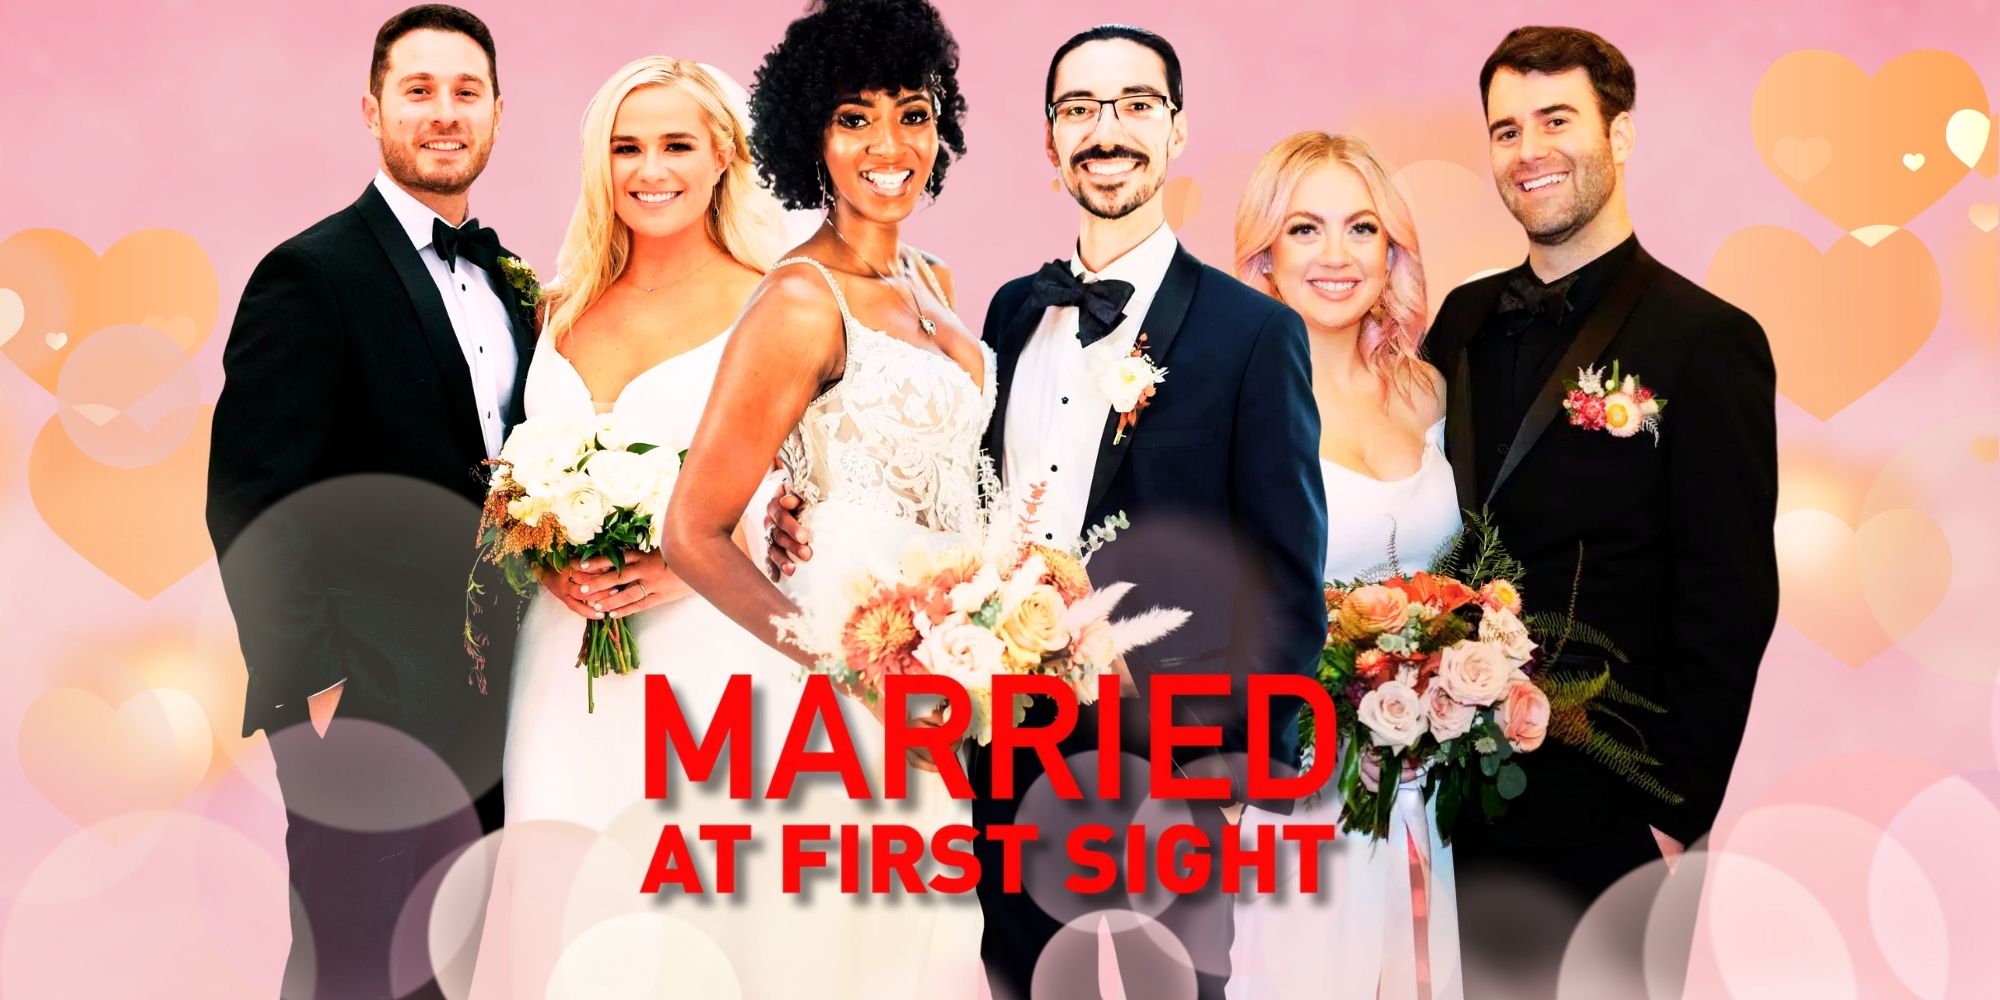 Elenco da 17ª temporada de Married At First Sight em trajes de casamento